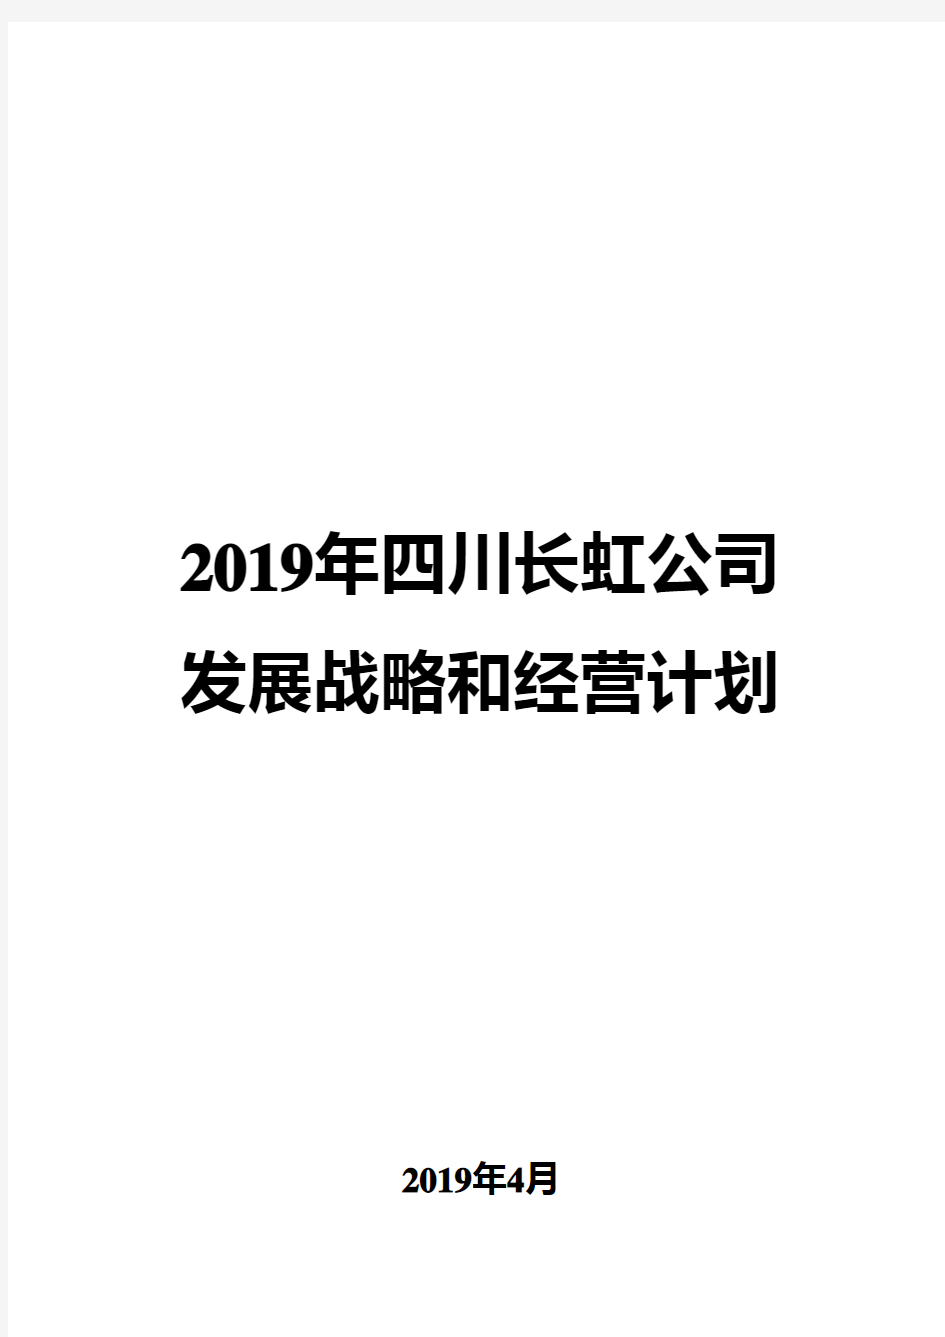 2019年四川长虹公司发展战略和经营计划